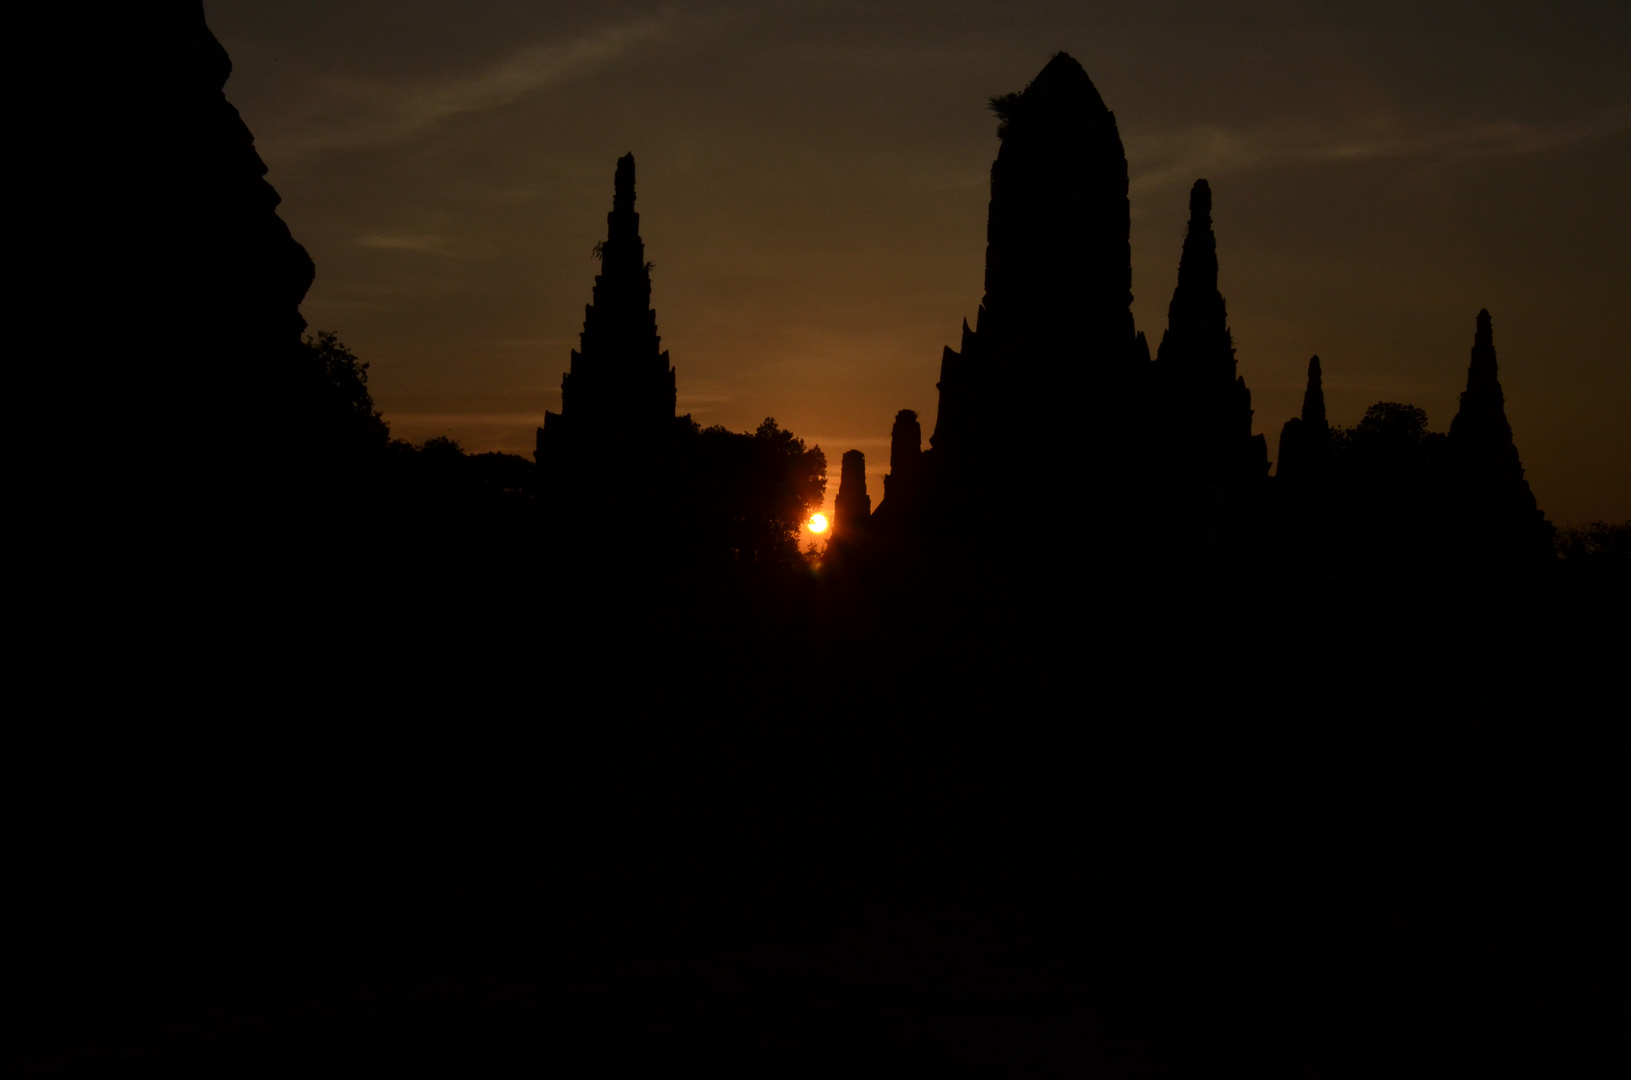 Sunset at Wat Chaiwatthanaram